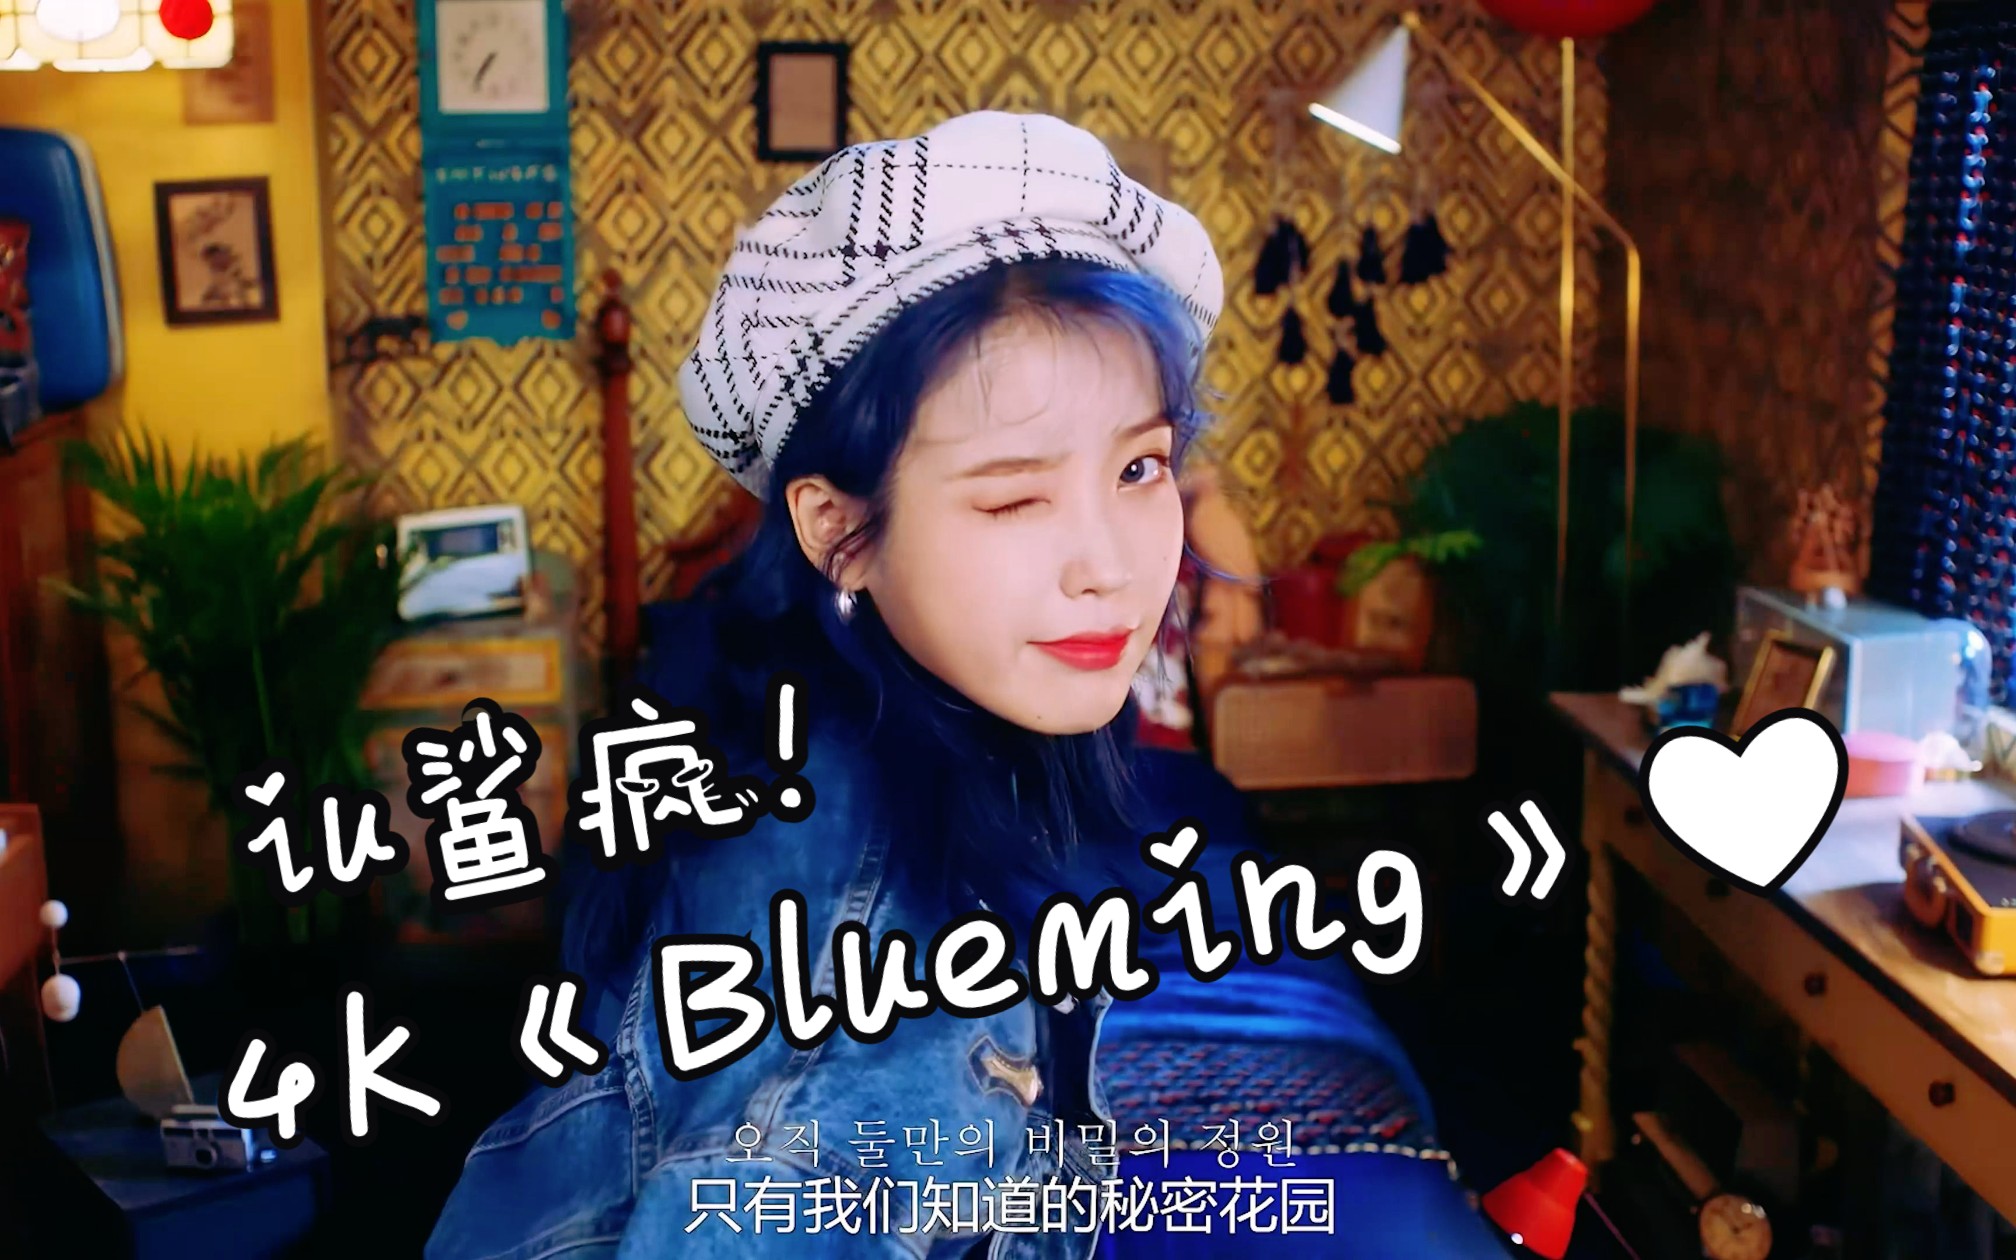 bluemingMV图片